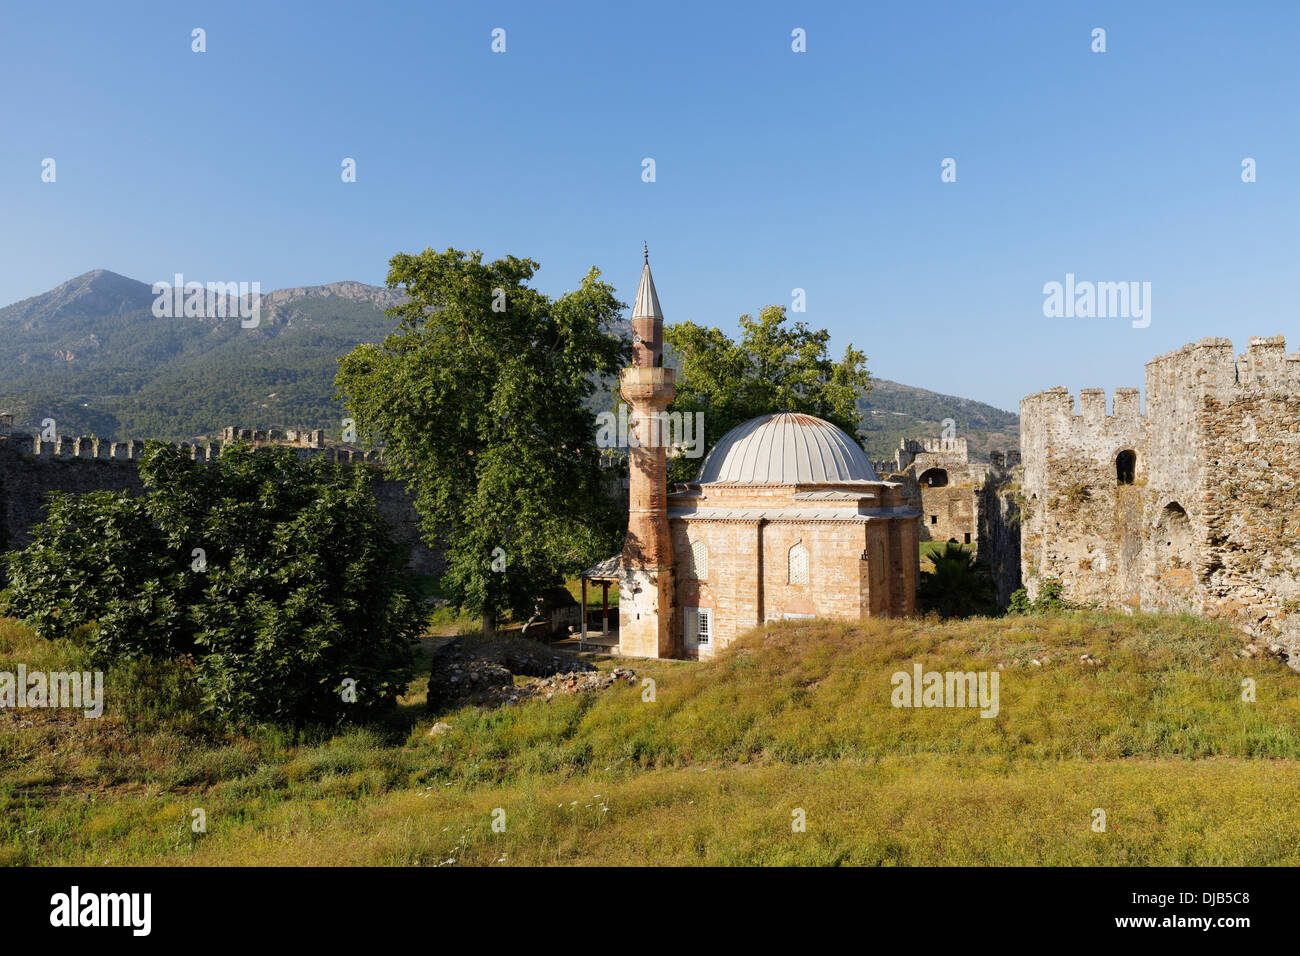 Moschee in Mamure Burg, Anamur, Mersin Provinz Cilicia, türkische Riviera, Türkei Stockfoto